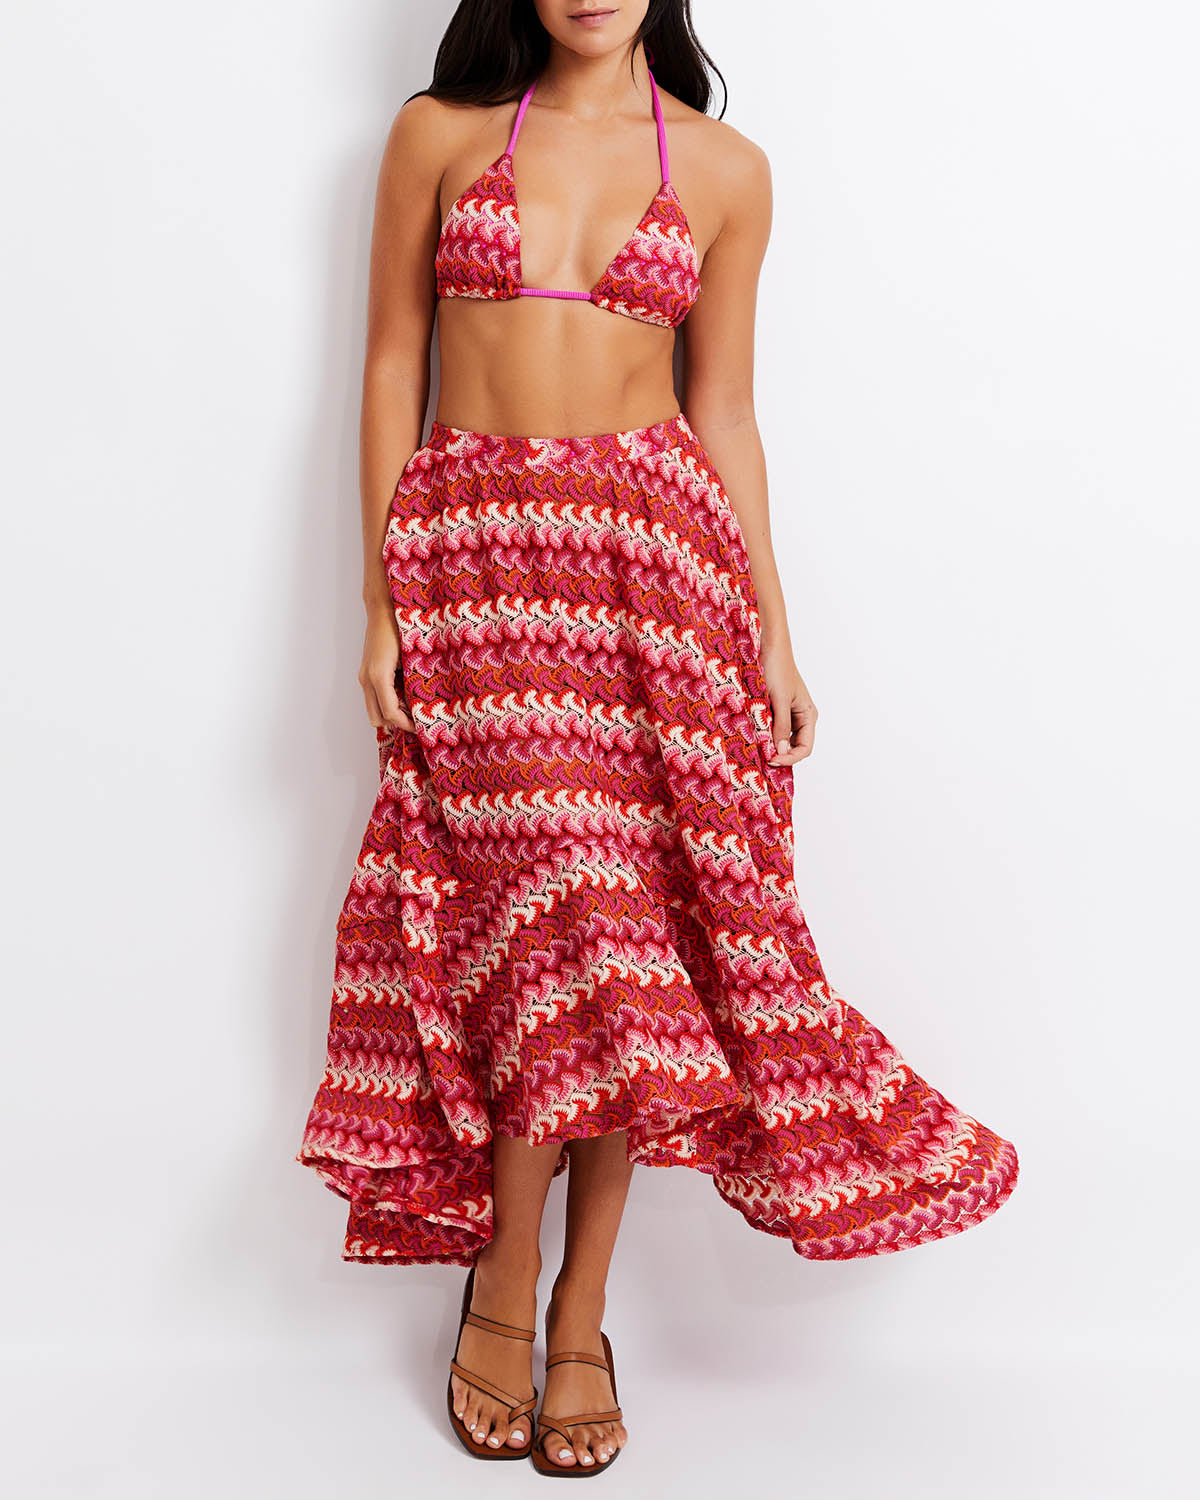 Crochet Beach Skirt X Harrods (FINAL SALE)